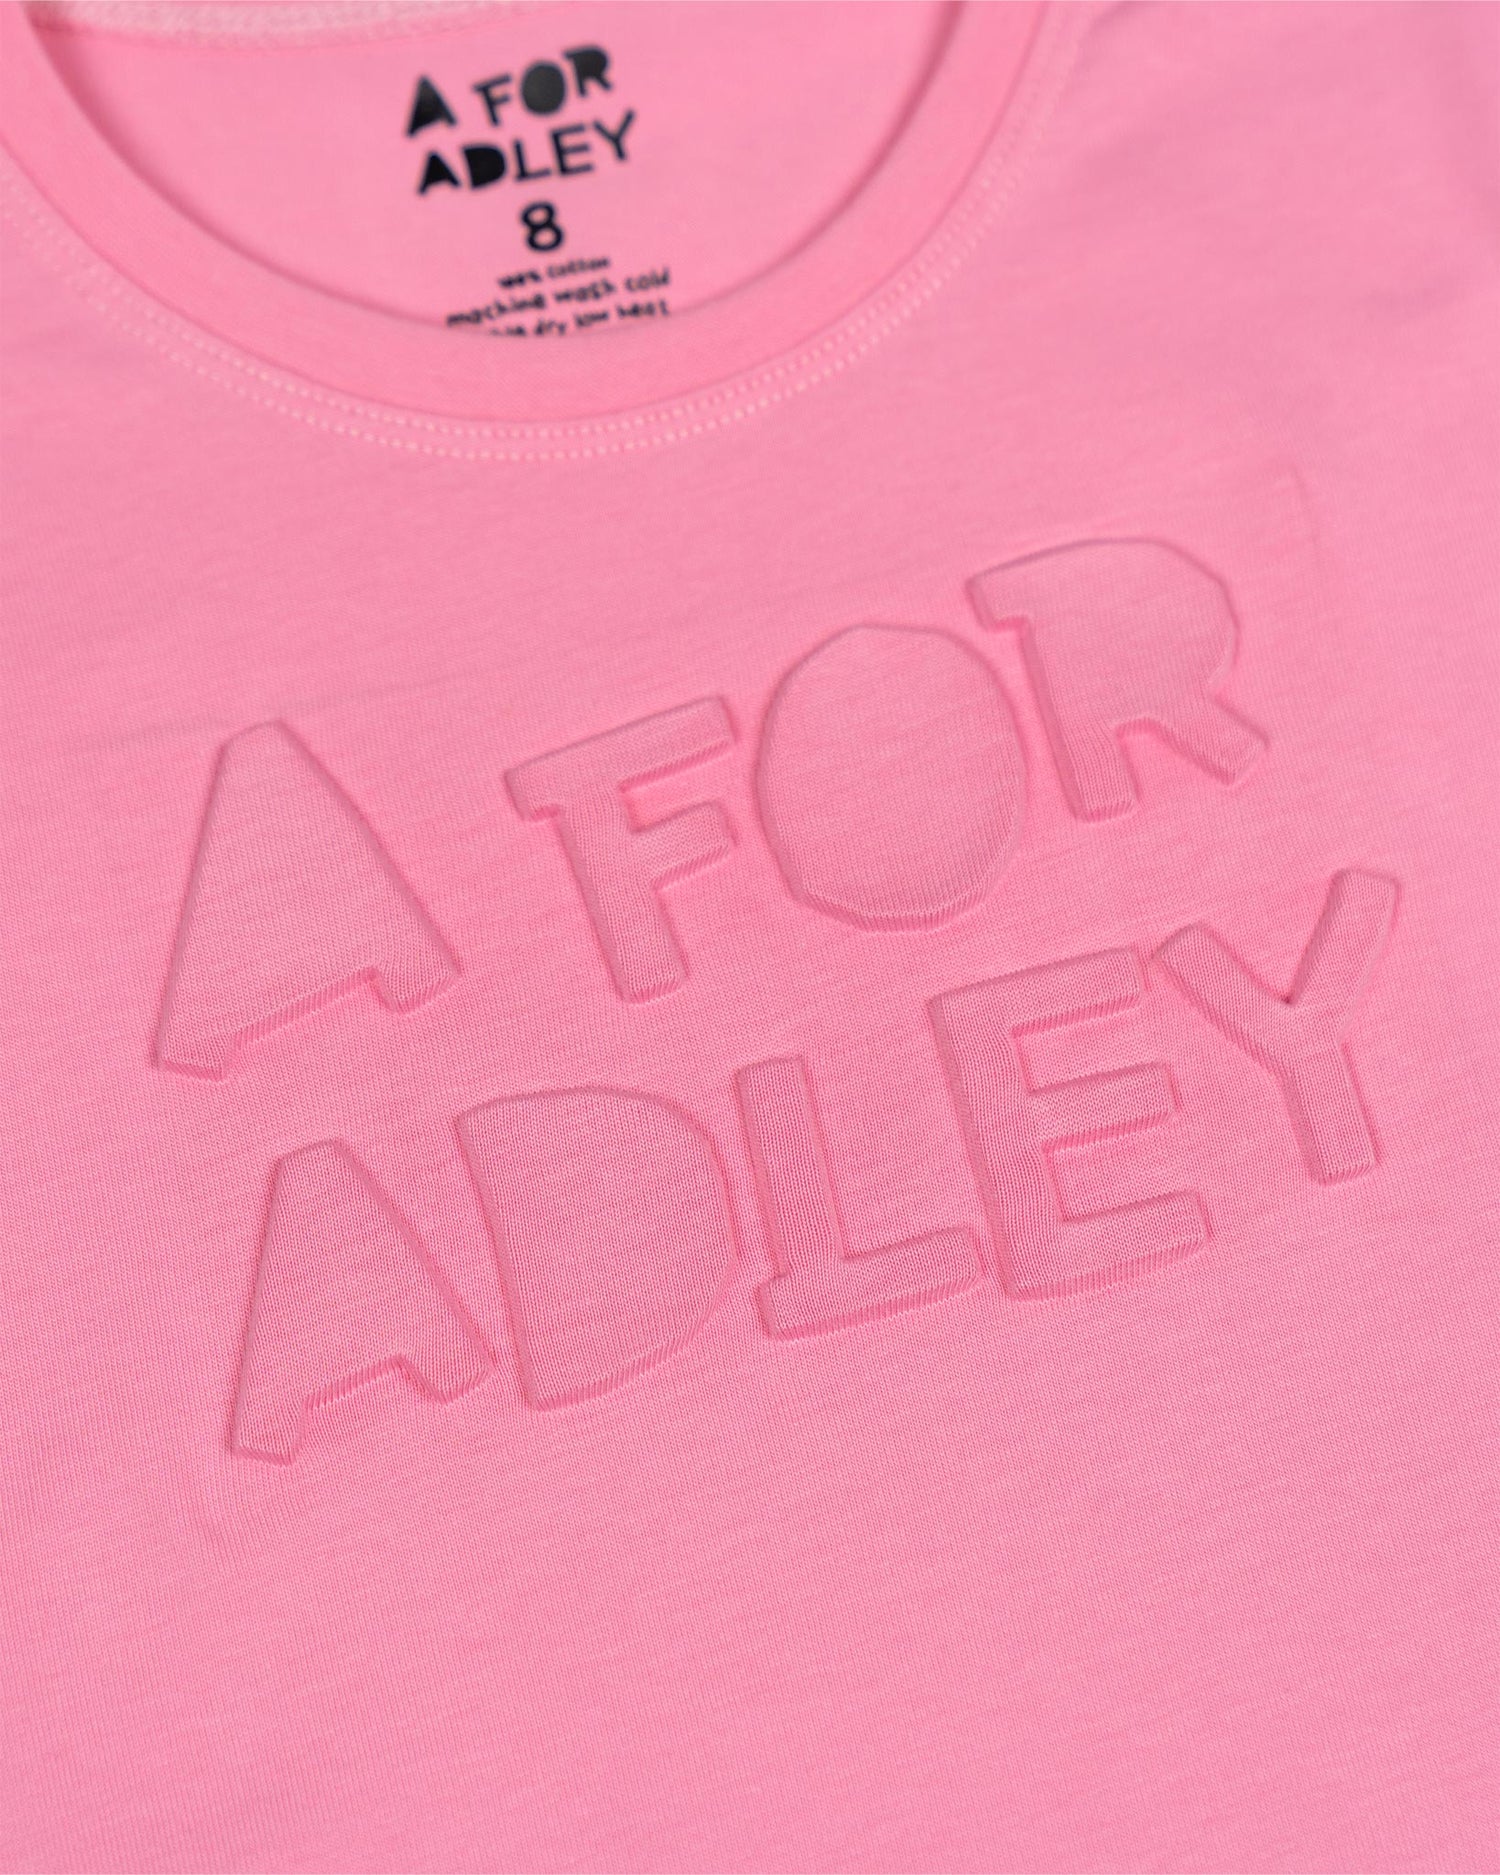 A for Adley 3D Logo Tee